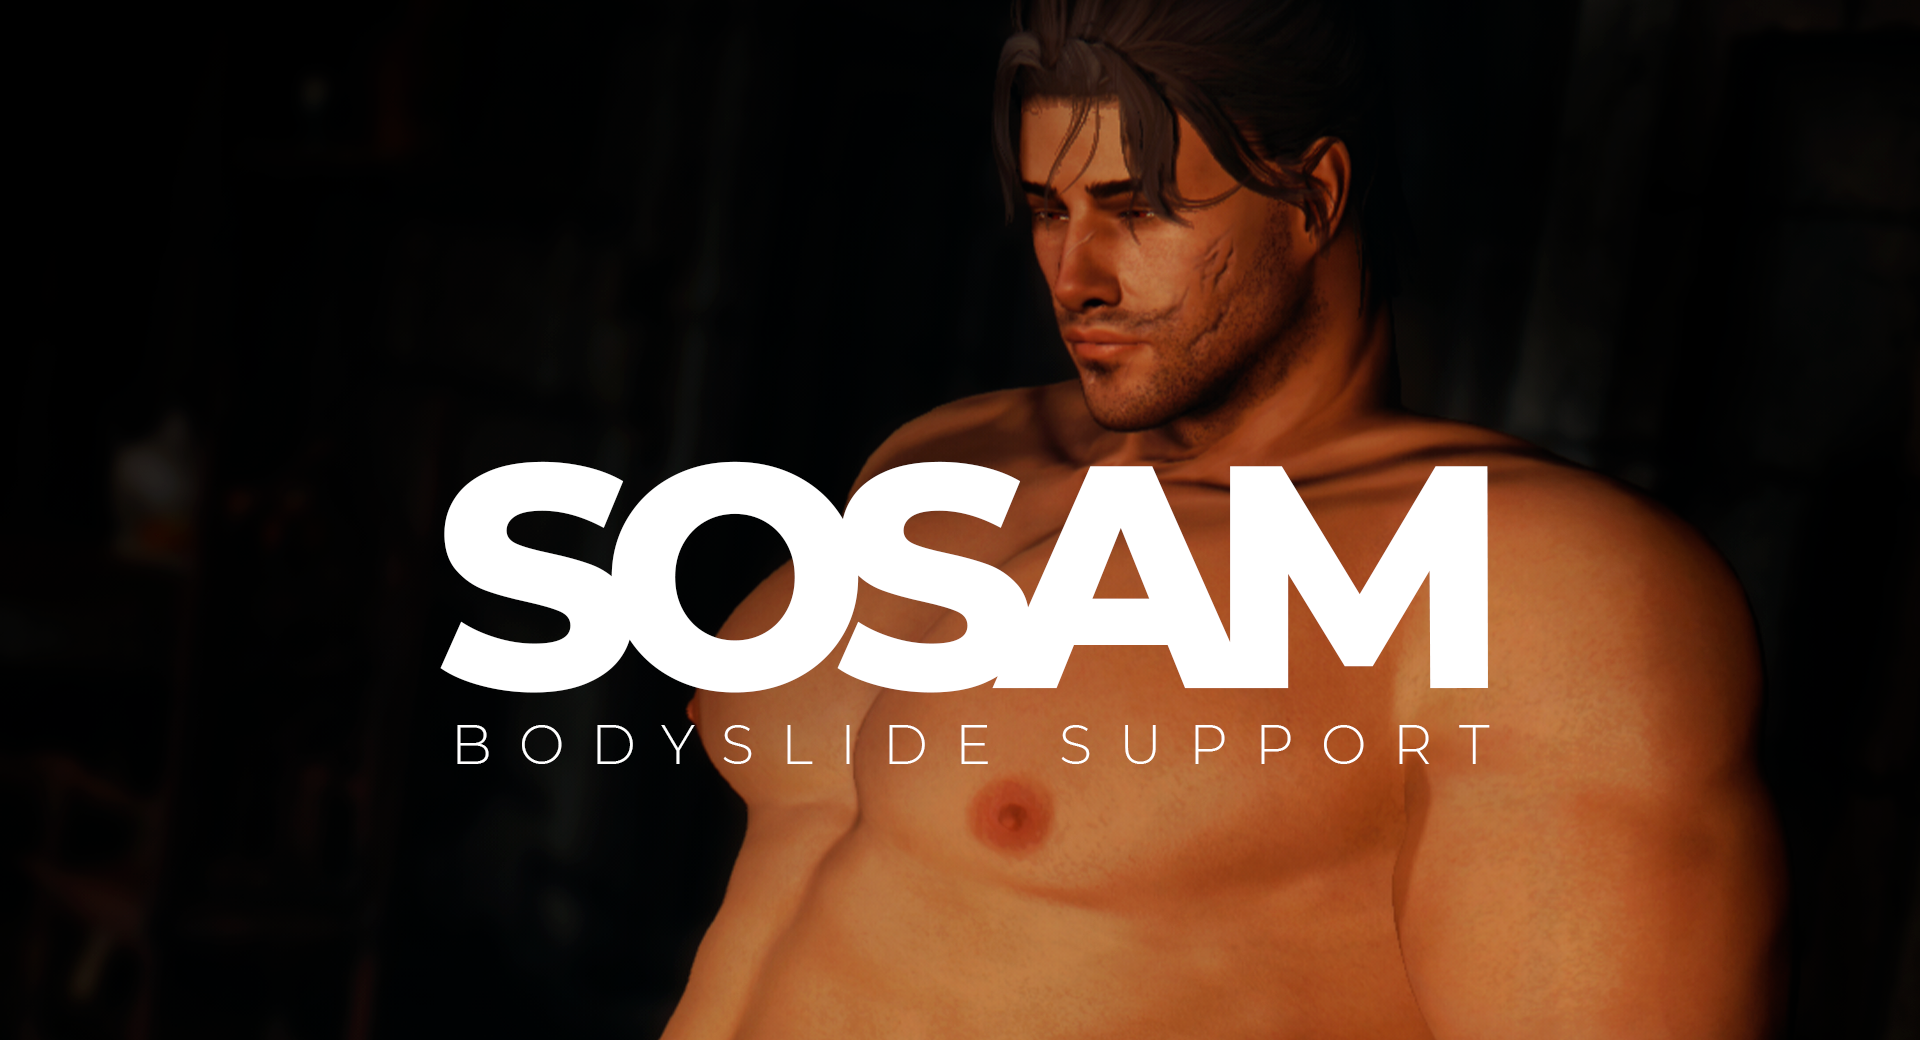 SOSAM - Bodyslide Support